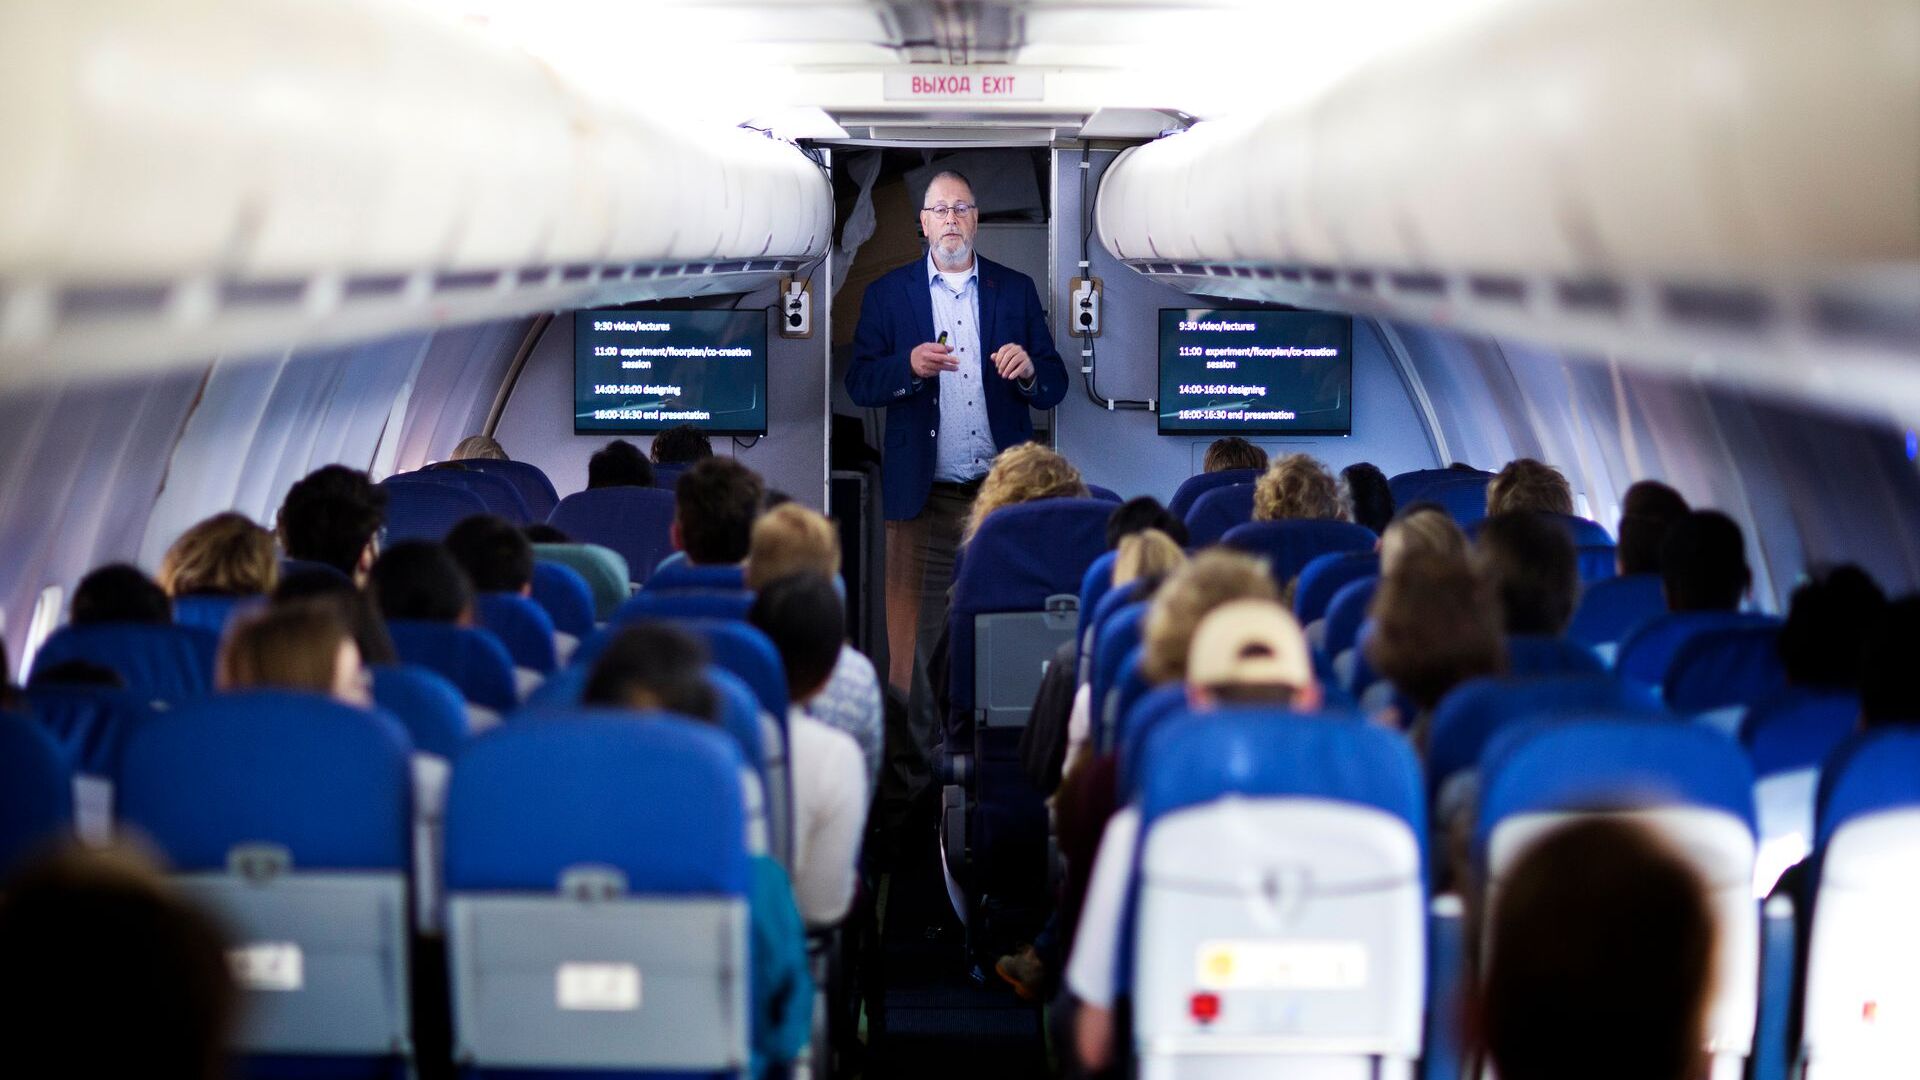 Il confort dei passeggeri dentro l’aereo sostenibile “Flying-V”